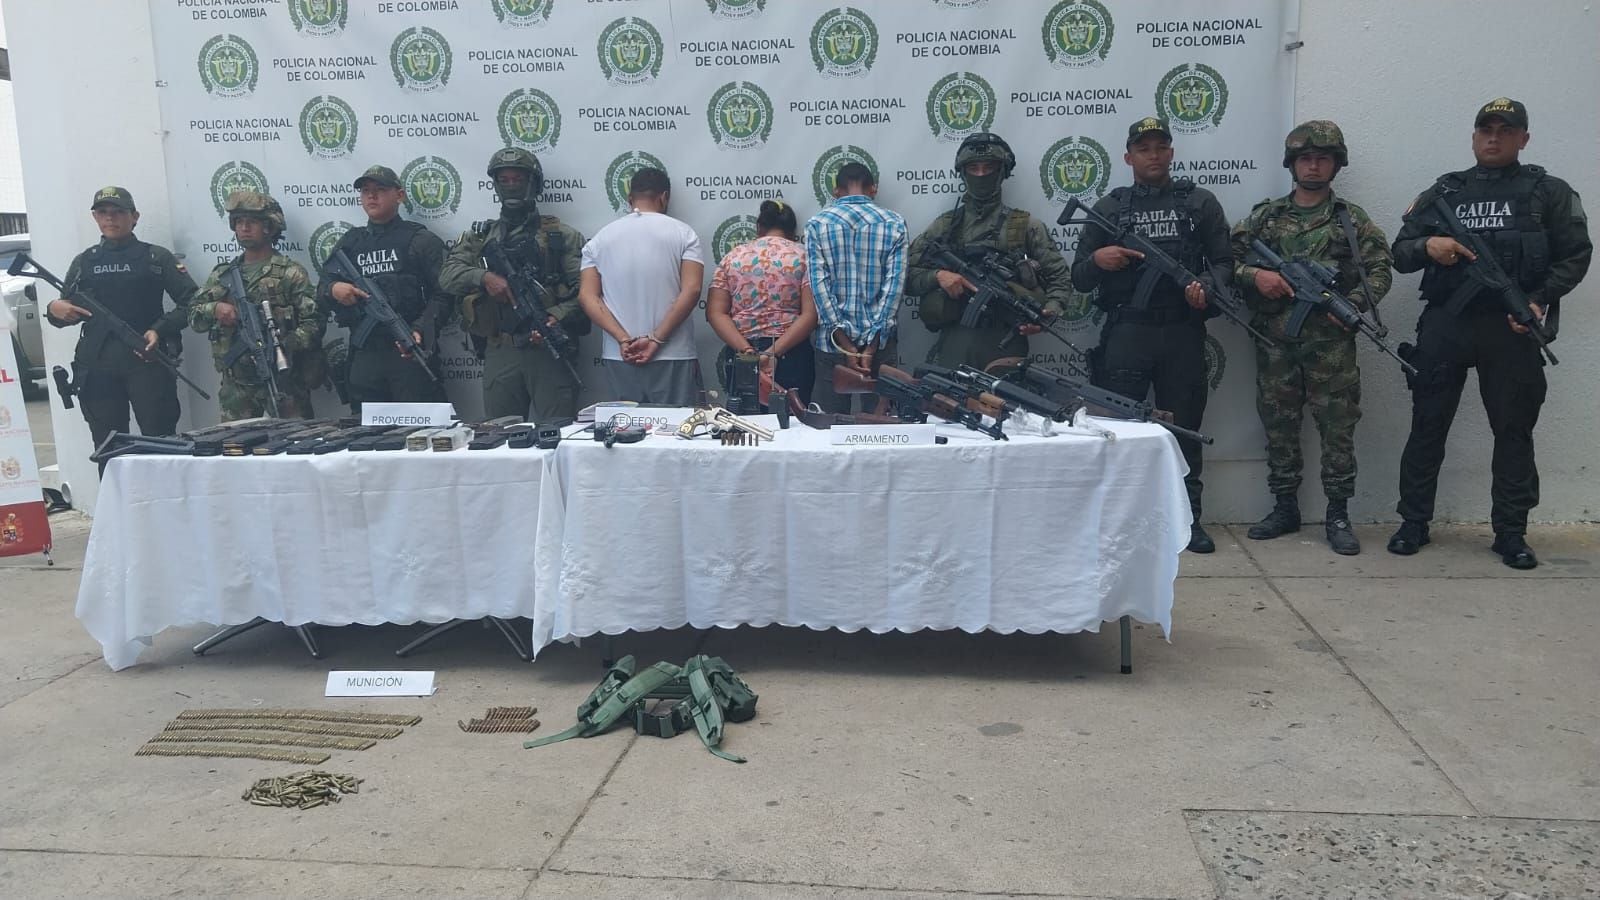 Policía Nacional capturó a alias "Guzmán" cabecilla del Clan del Golfo que tenía un revolver con cacha de plata e incrustaciones de oro - crédito Policía Nacional